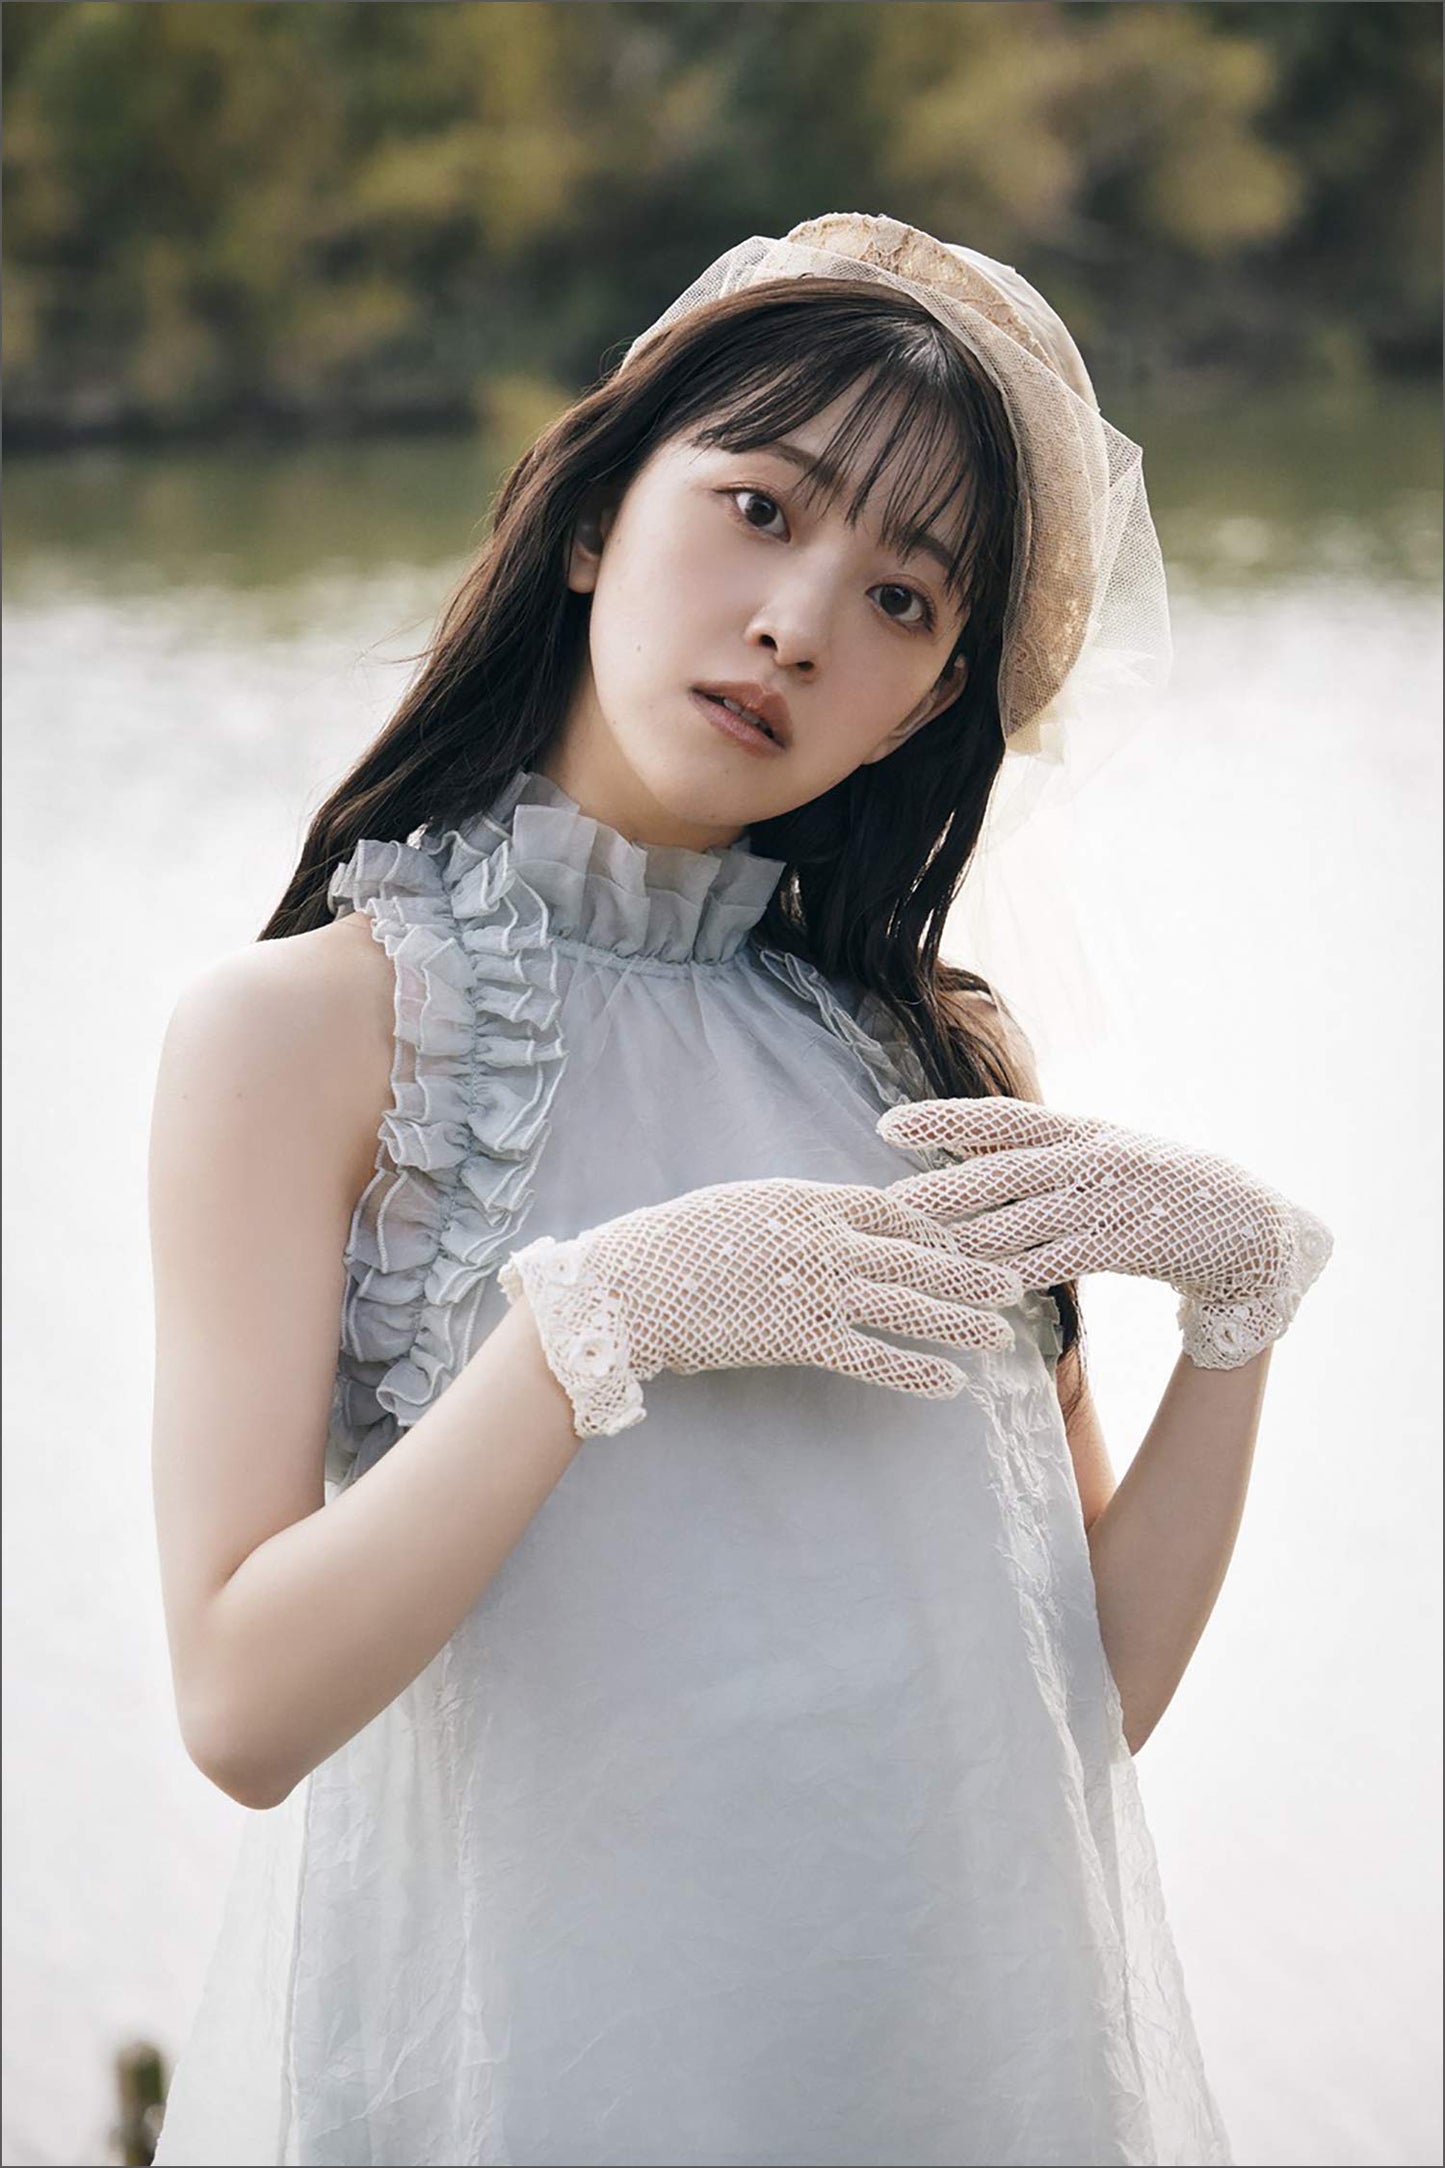 Miona Hori Photo Book "Itsunomanika"  / Nogizaka46